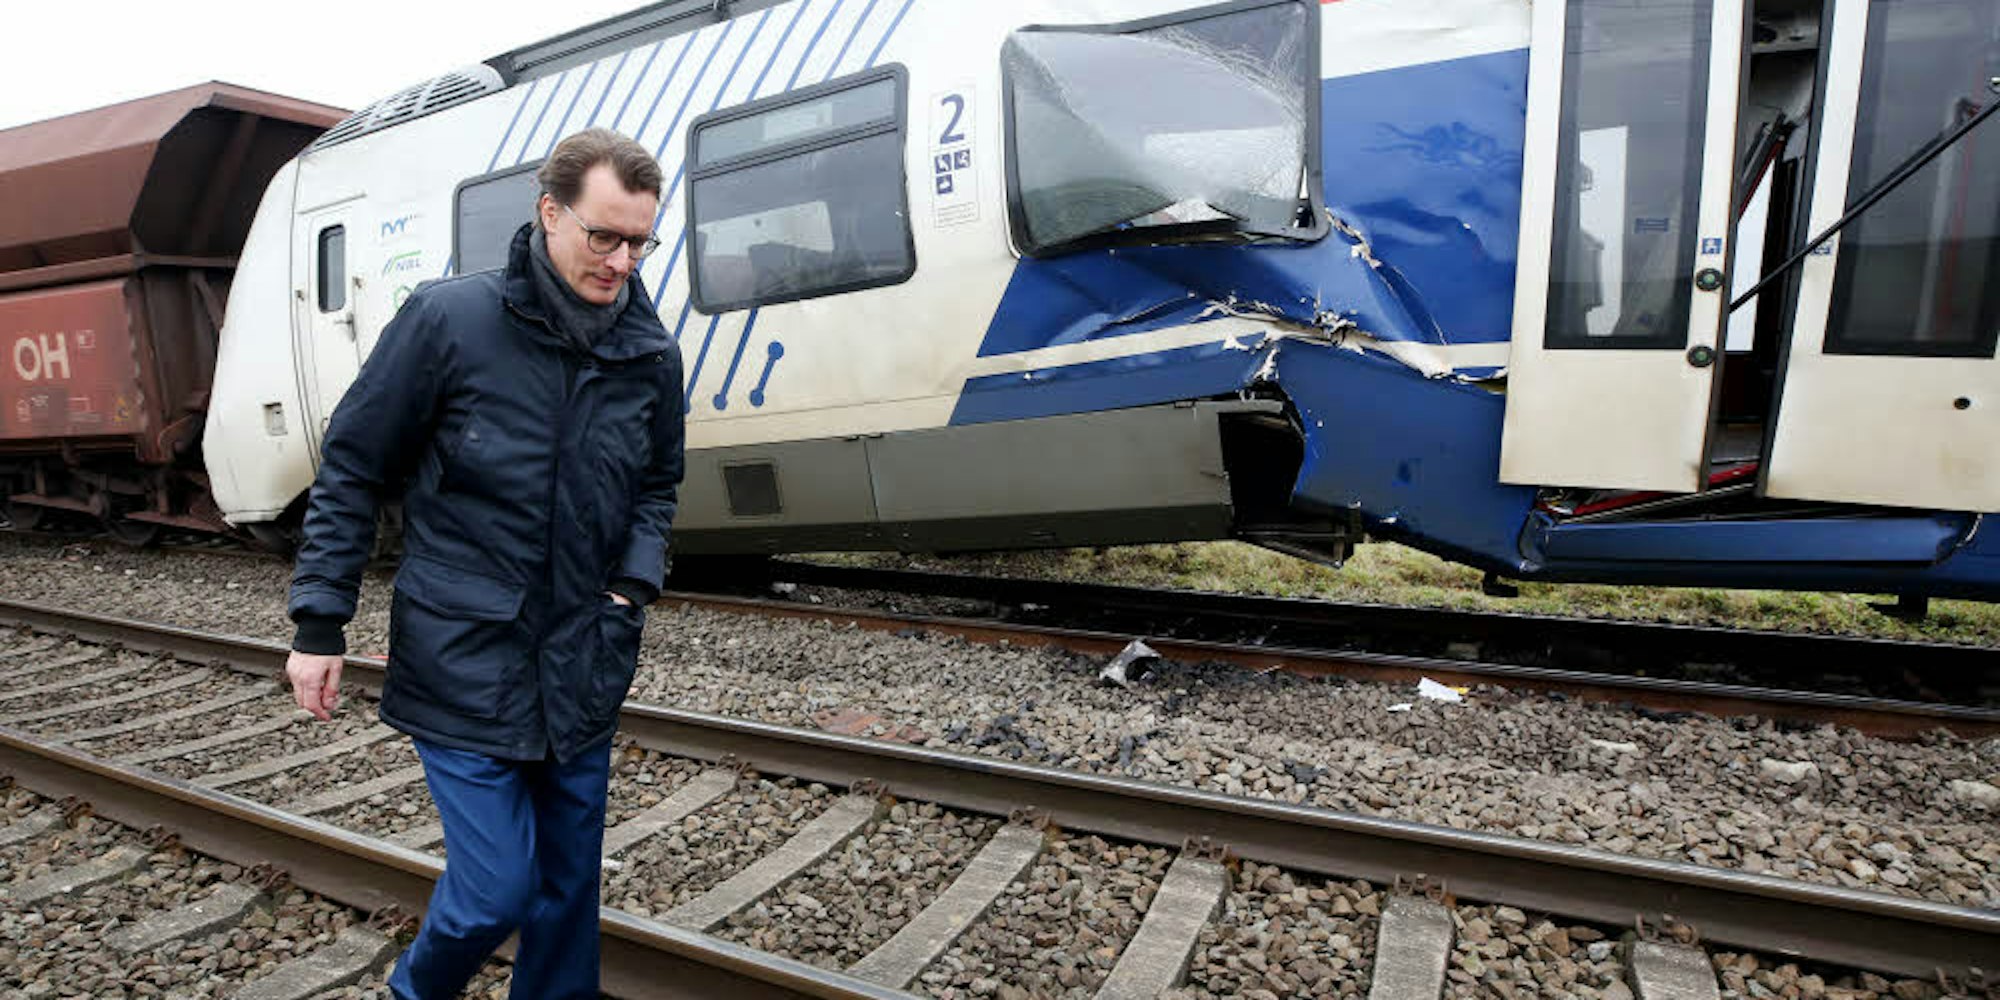 NRW-Verkehrsminister Hendrik Wüst (CDU) besichtigt den Unfallort in Meerbusch.